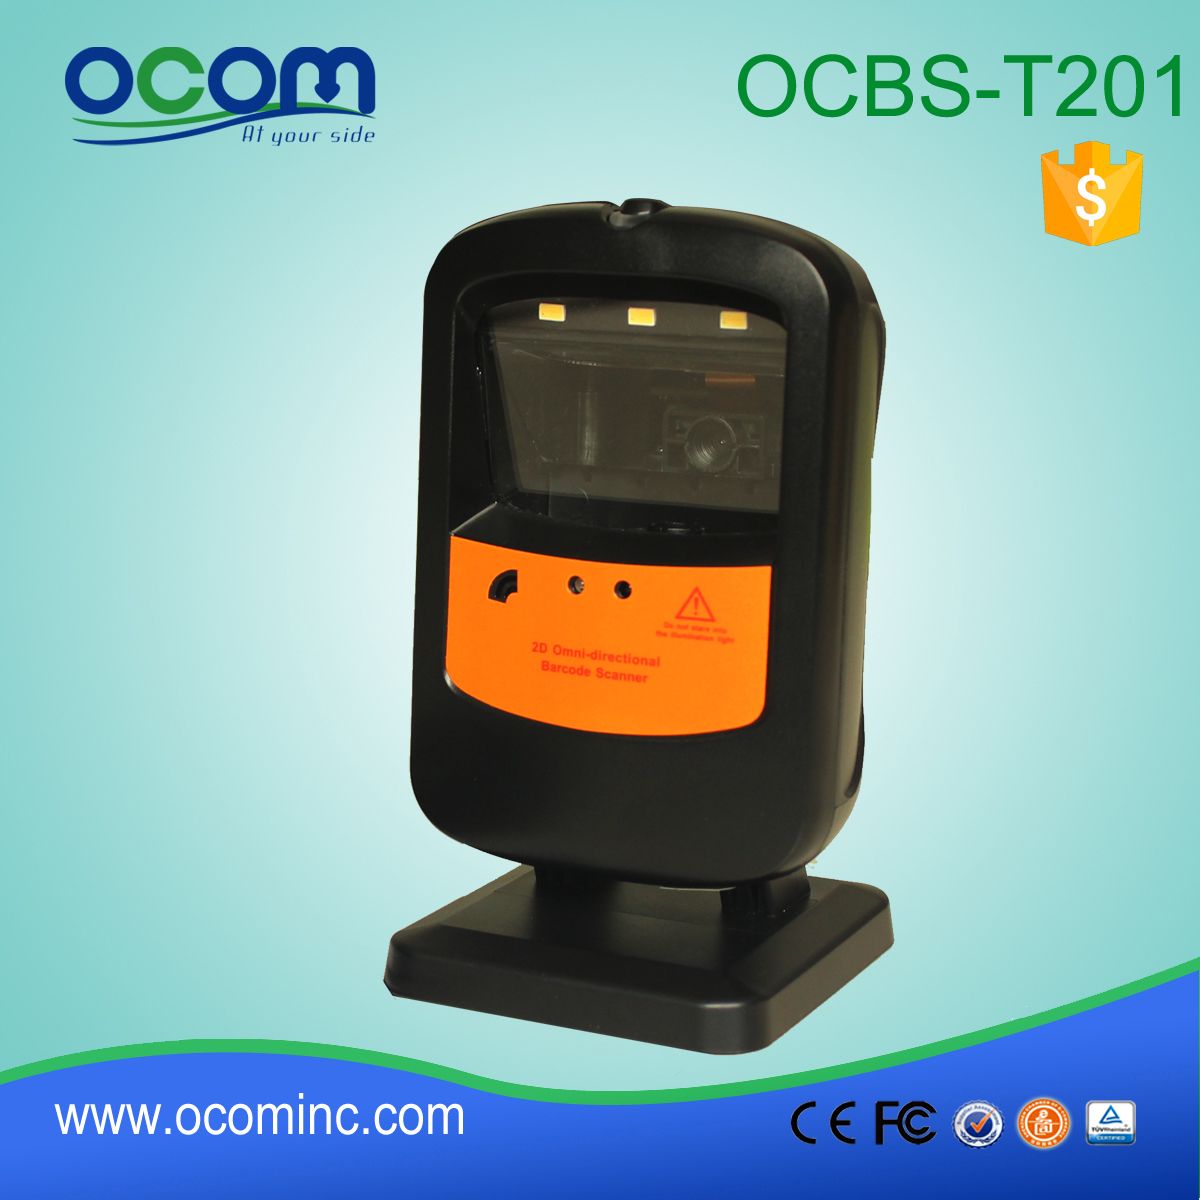 OCBS-T201: código de barras con proveedor escáner filipinas, módulo de escáner de código de barras 2d